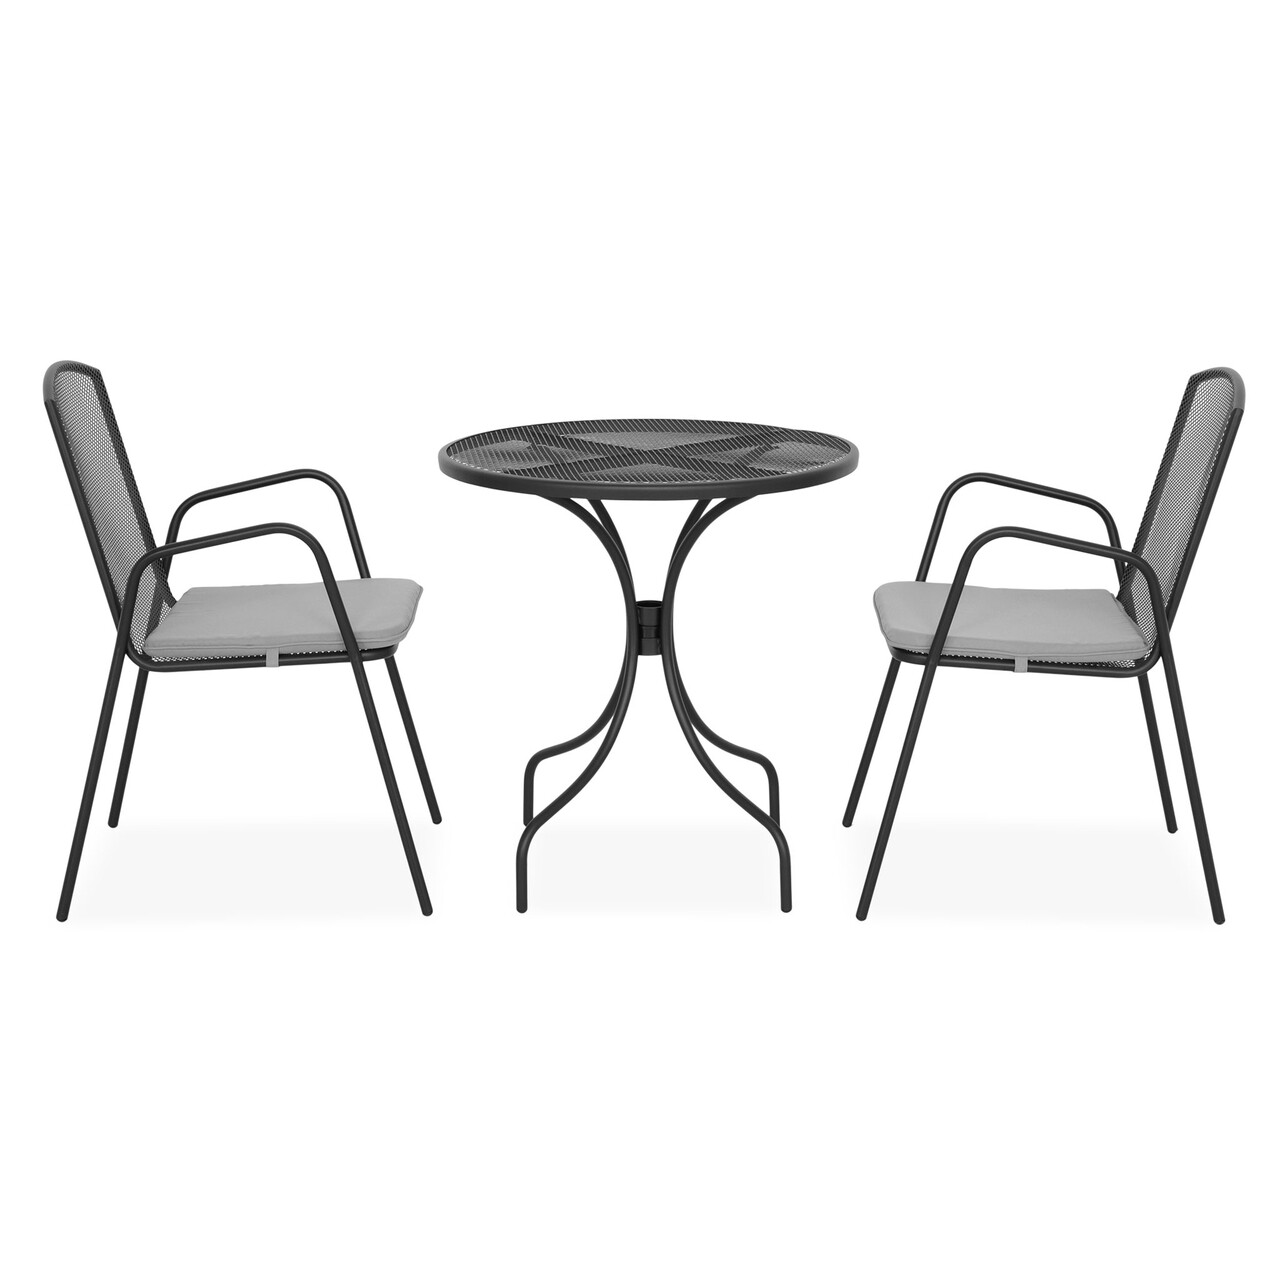 Maison berlin 2 db szék közepes háttámlával és kerek asztal, h.72 d.70 cm, acél, fekete/szürke